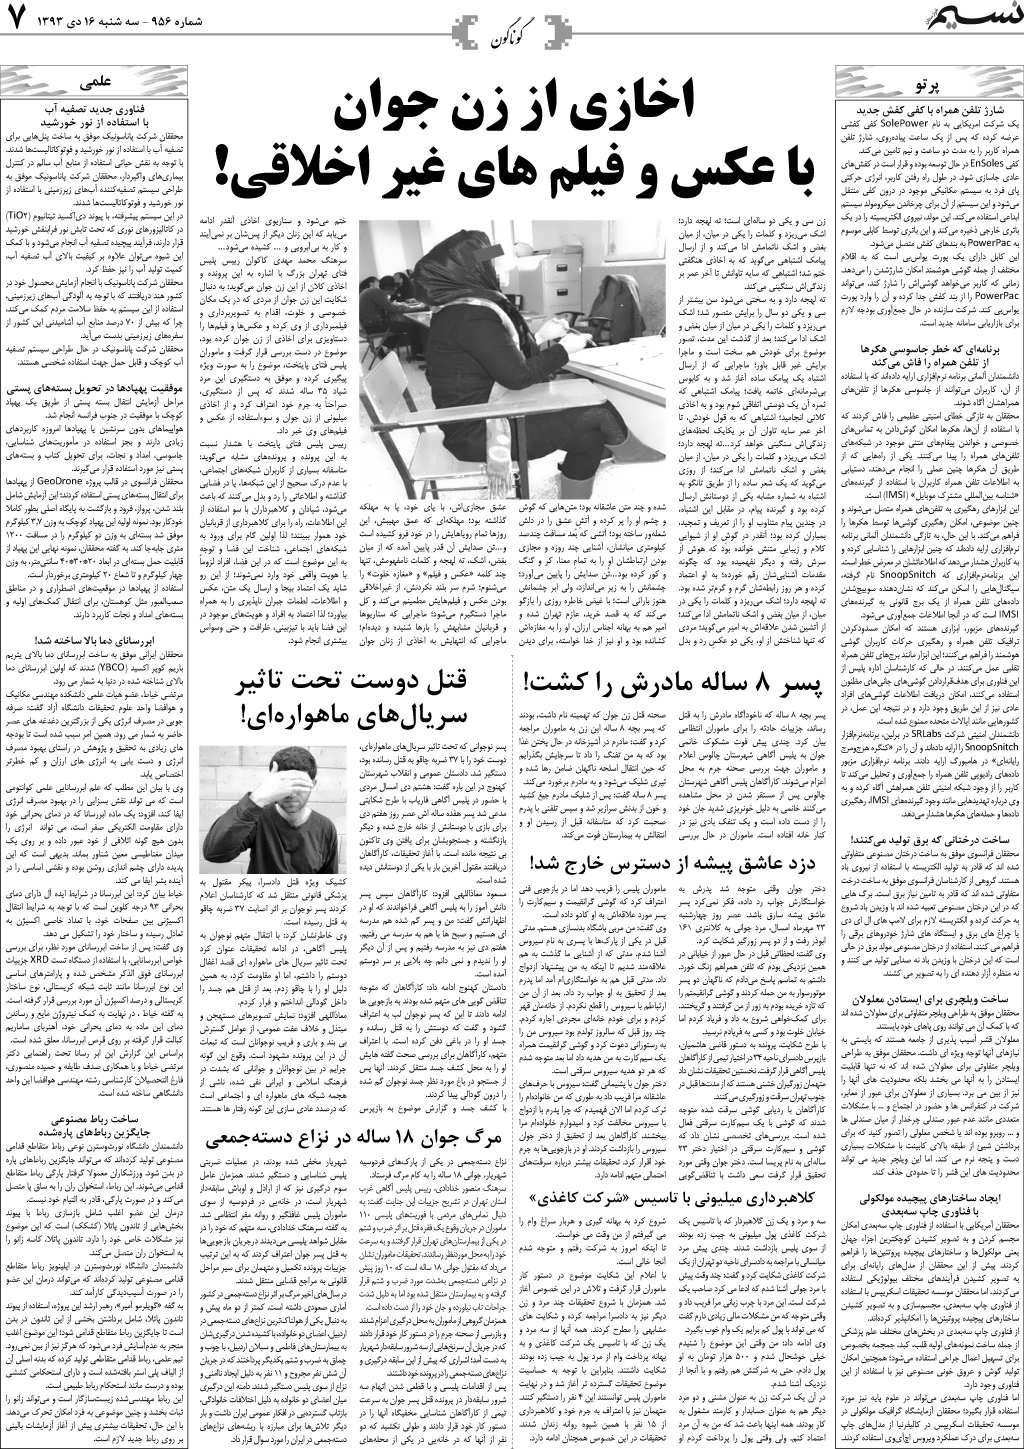 صفحه گوناگون روزنامه نسیم شماره 956